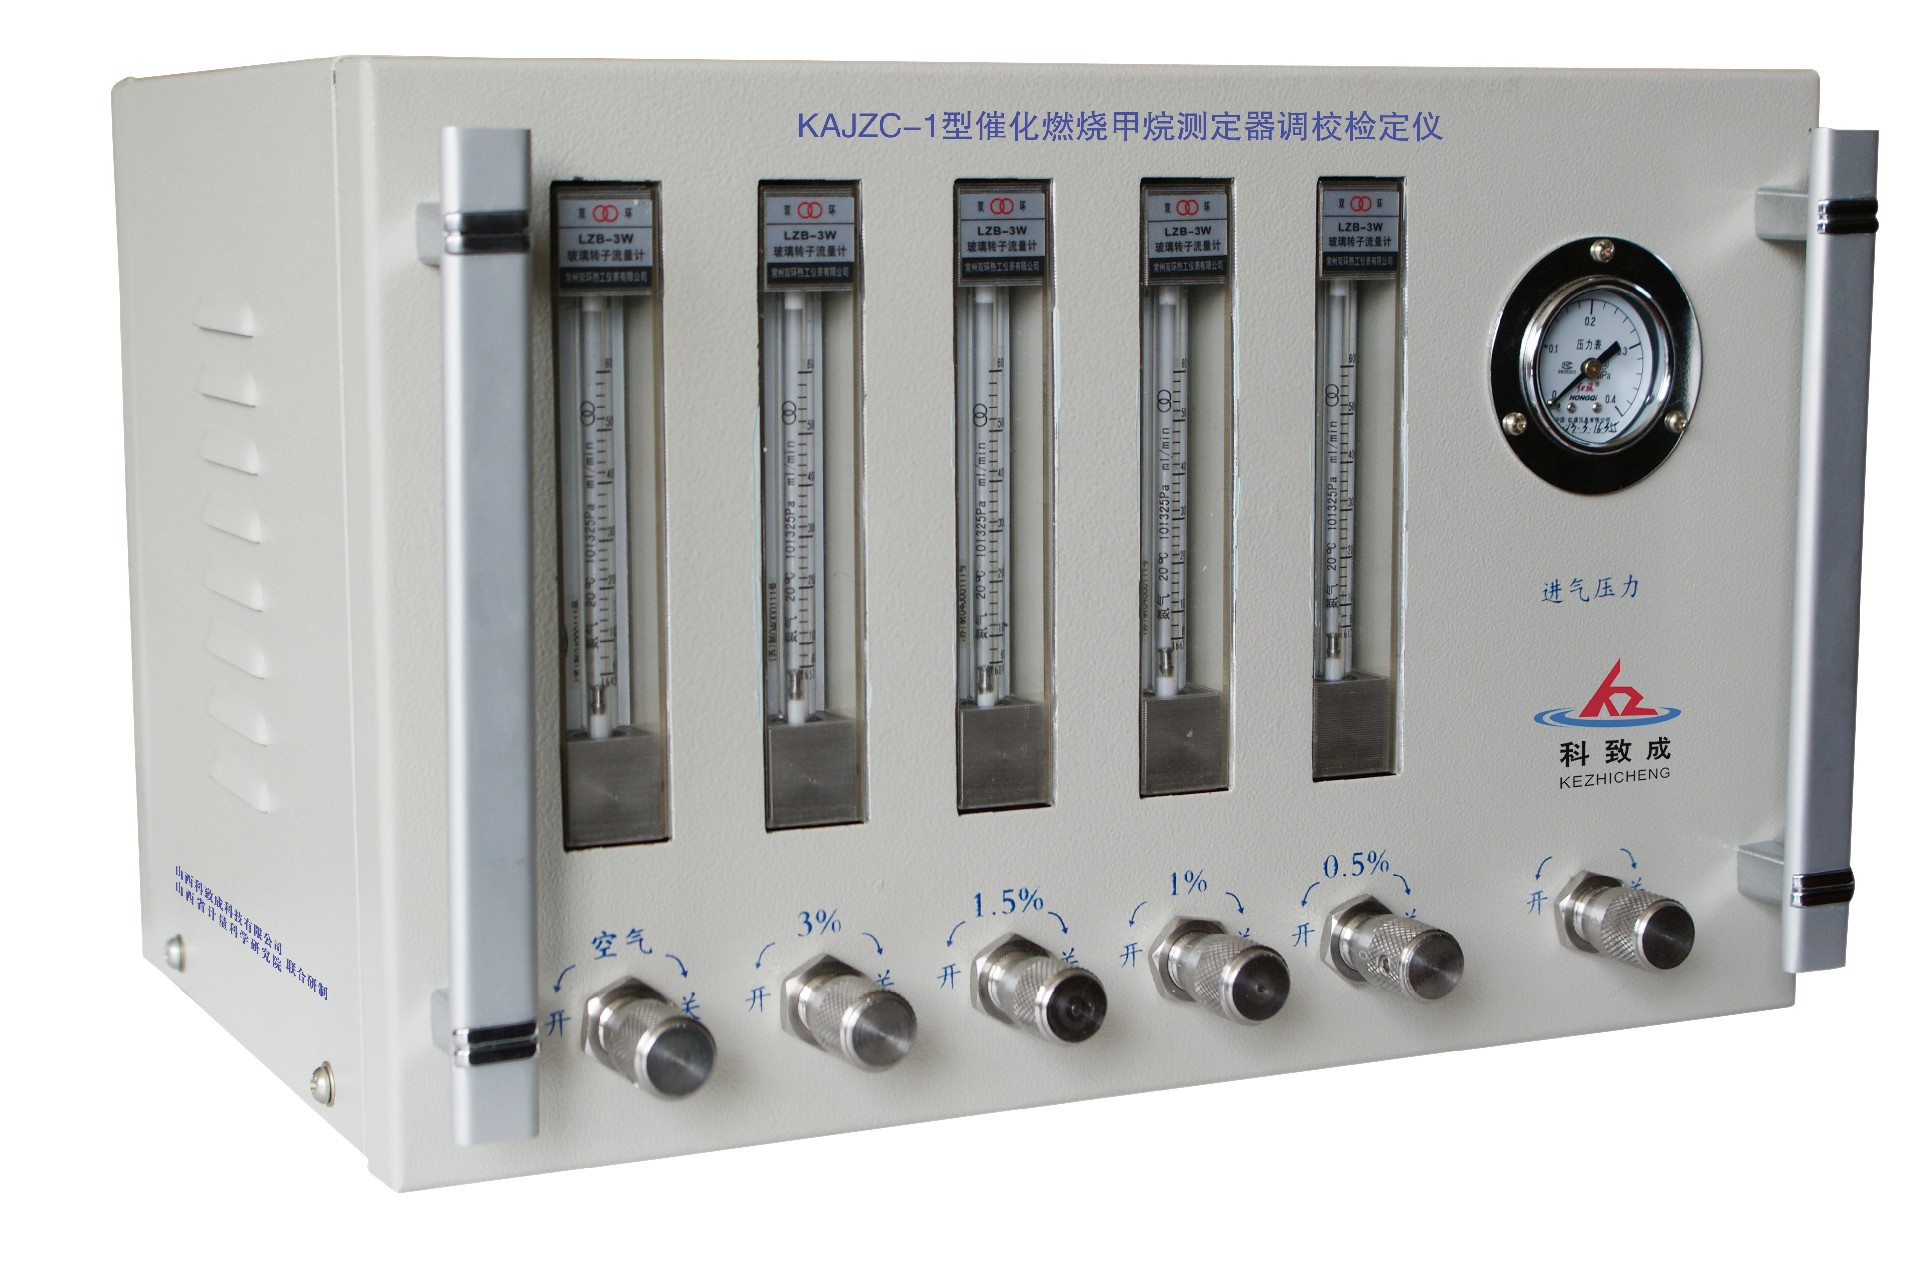 鹤壁KAJZC-1型催化燃烧甲烷测定器调校检定仪